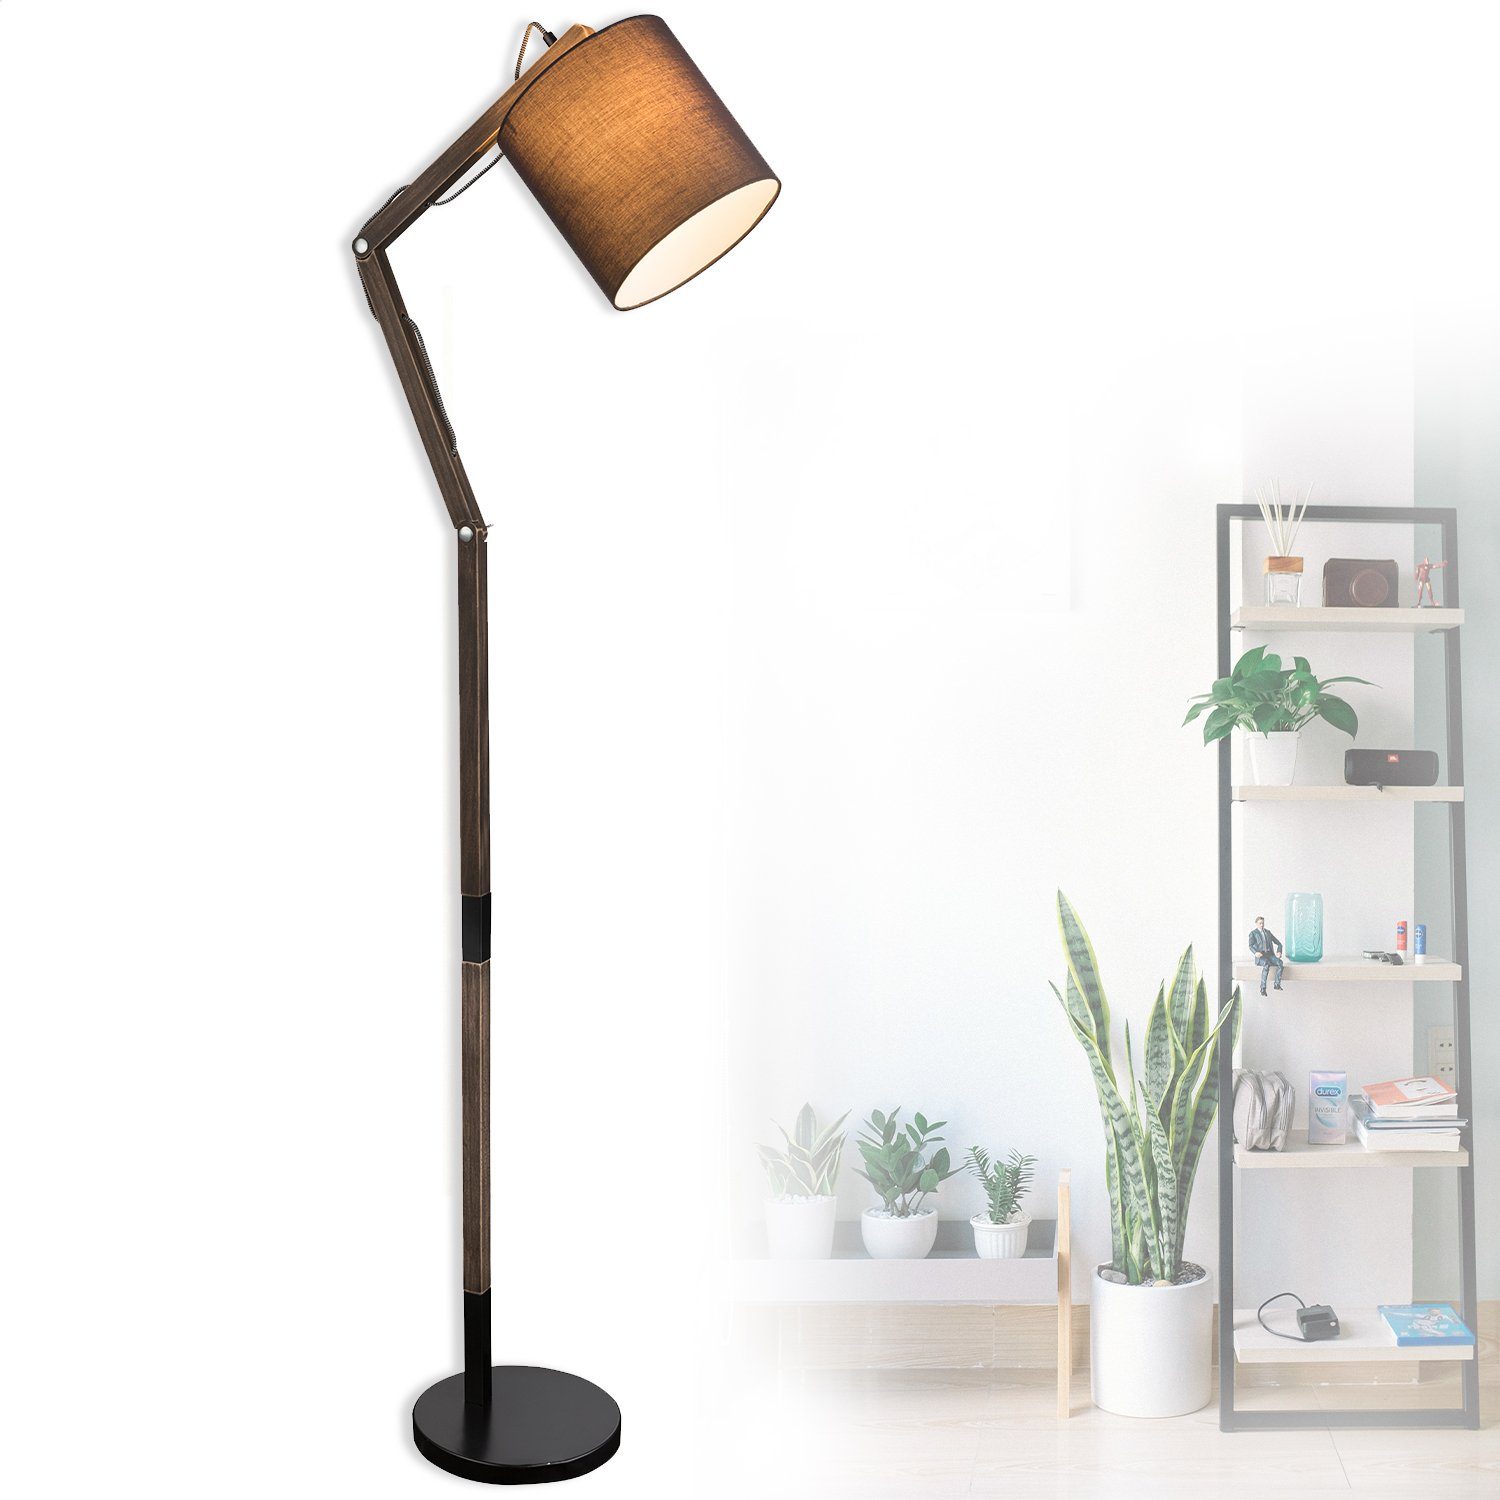 Stehlampe Metall Stehlampe Stehleuchte Holz Wohnzimmer bmf-versand E27 Retro schwarz braun